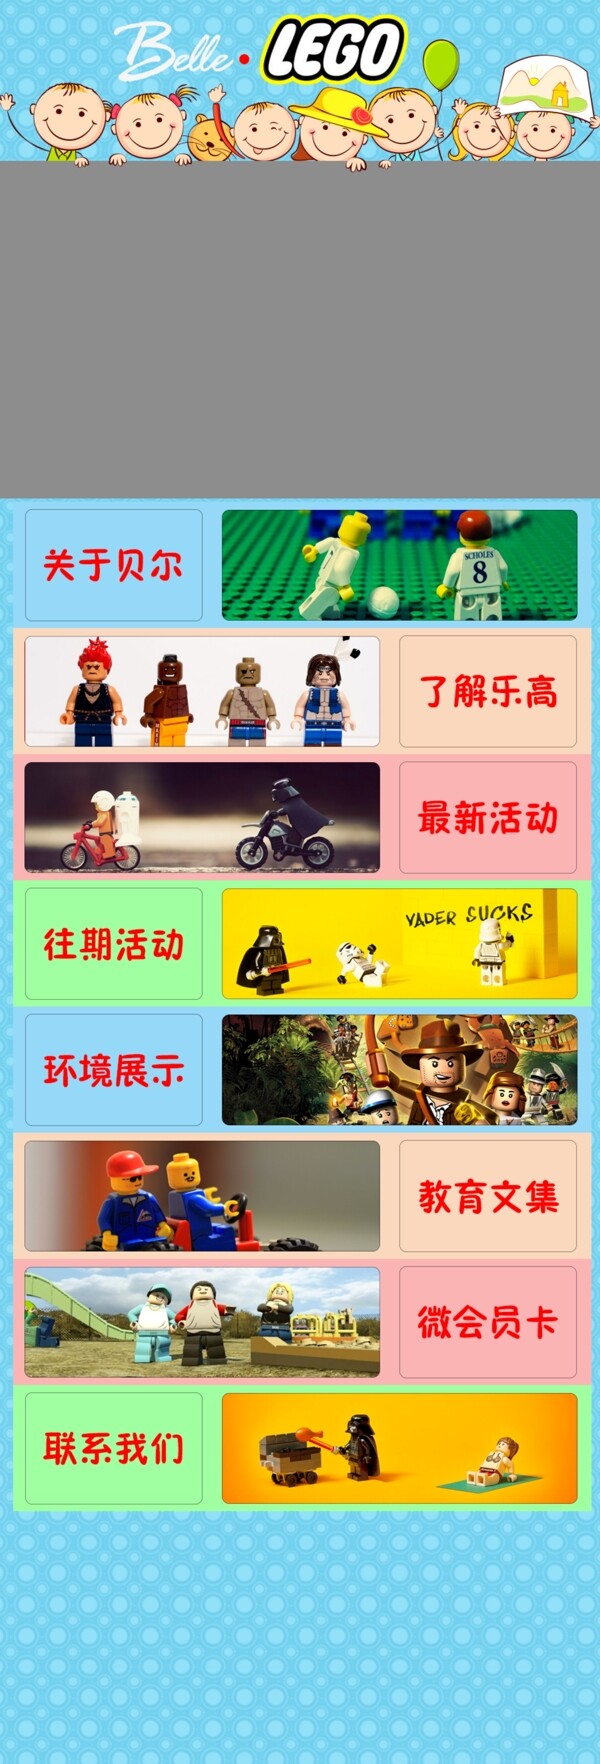 乐高微站儿童玩具微网站